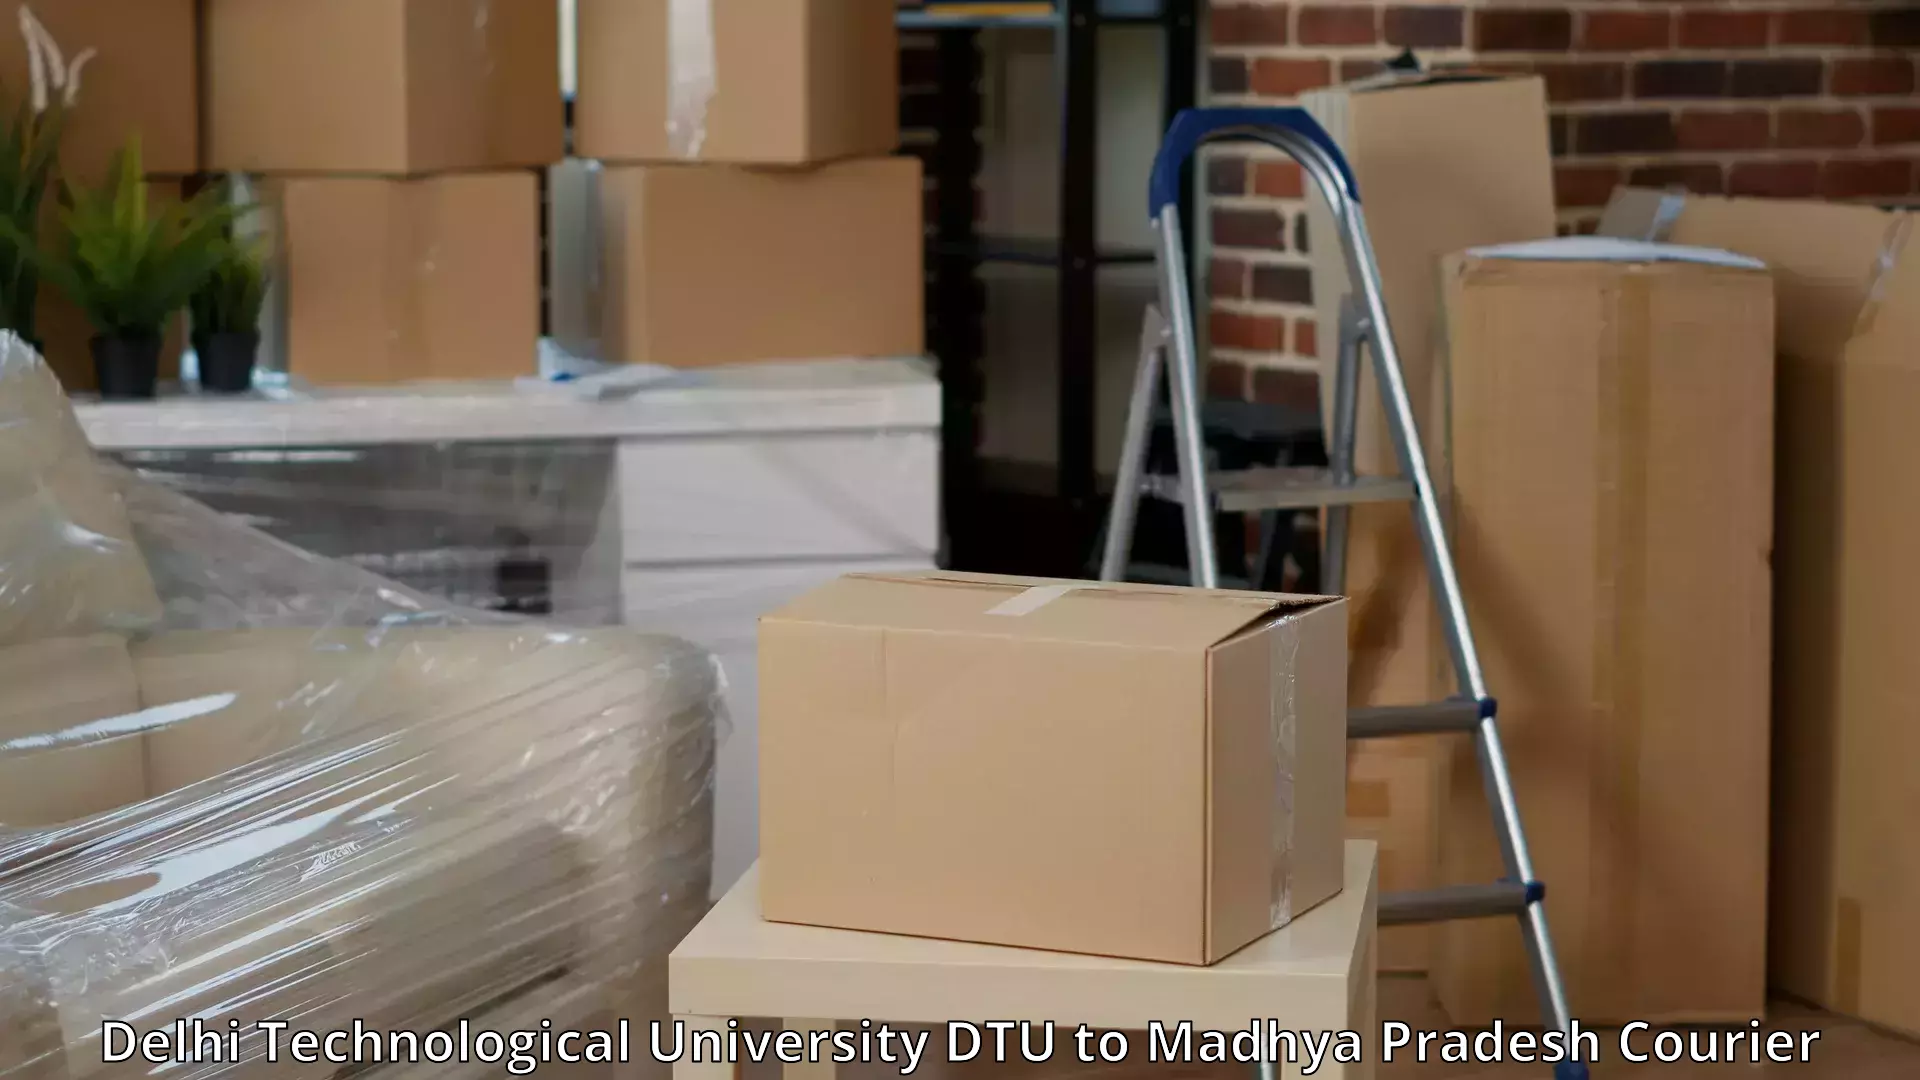 Furniture transport experts Delhi Technological University DTU to Amarkantak